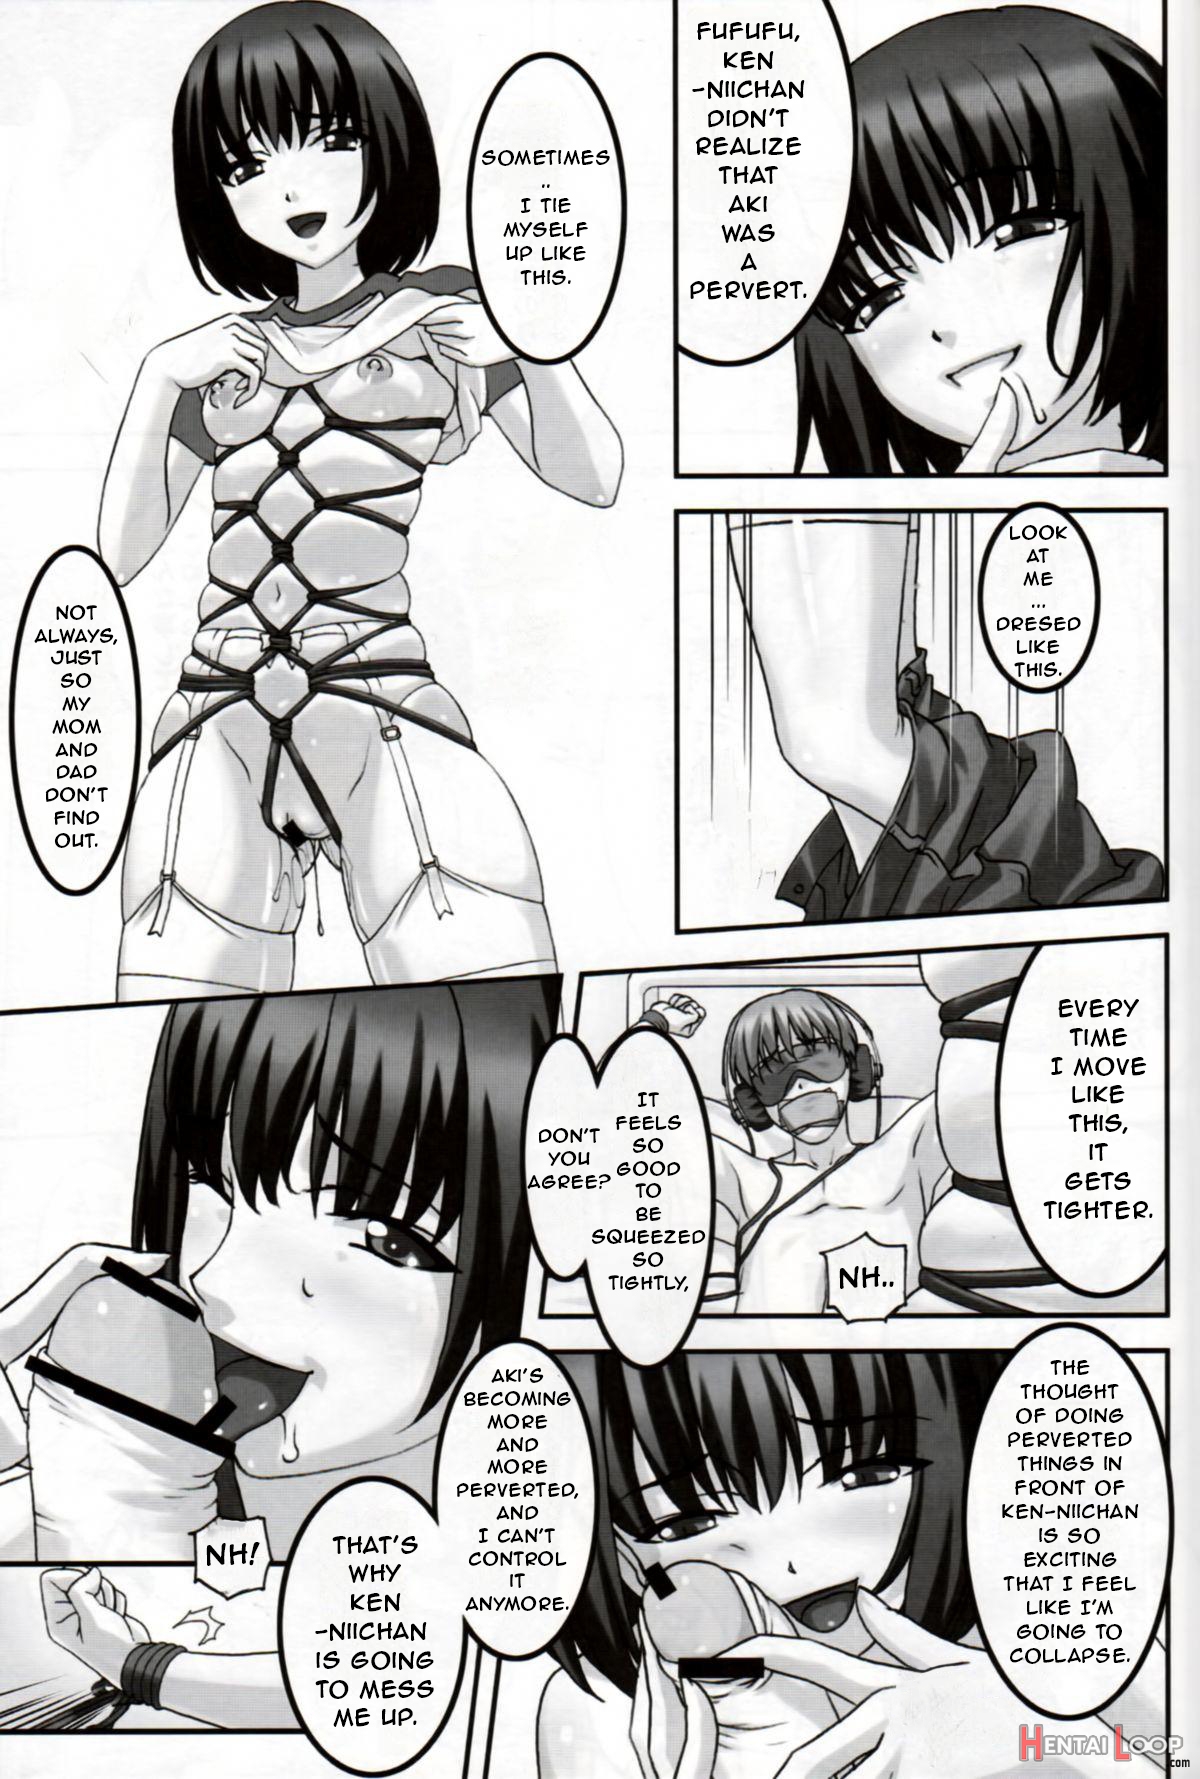 Hatsujou / Heat page 8